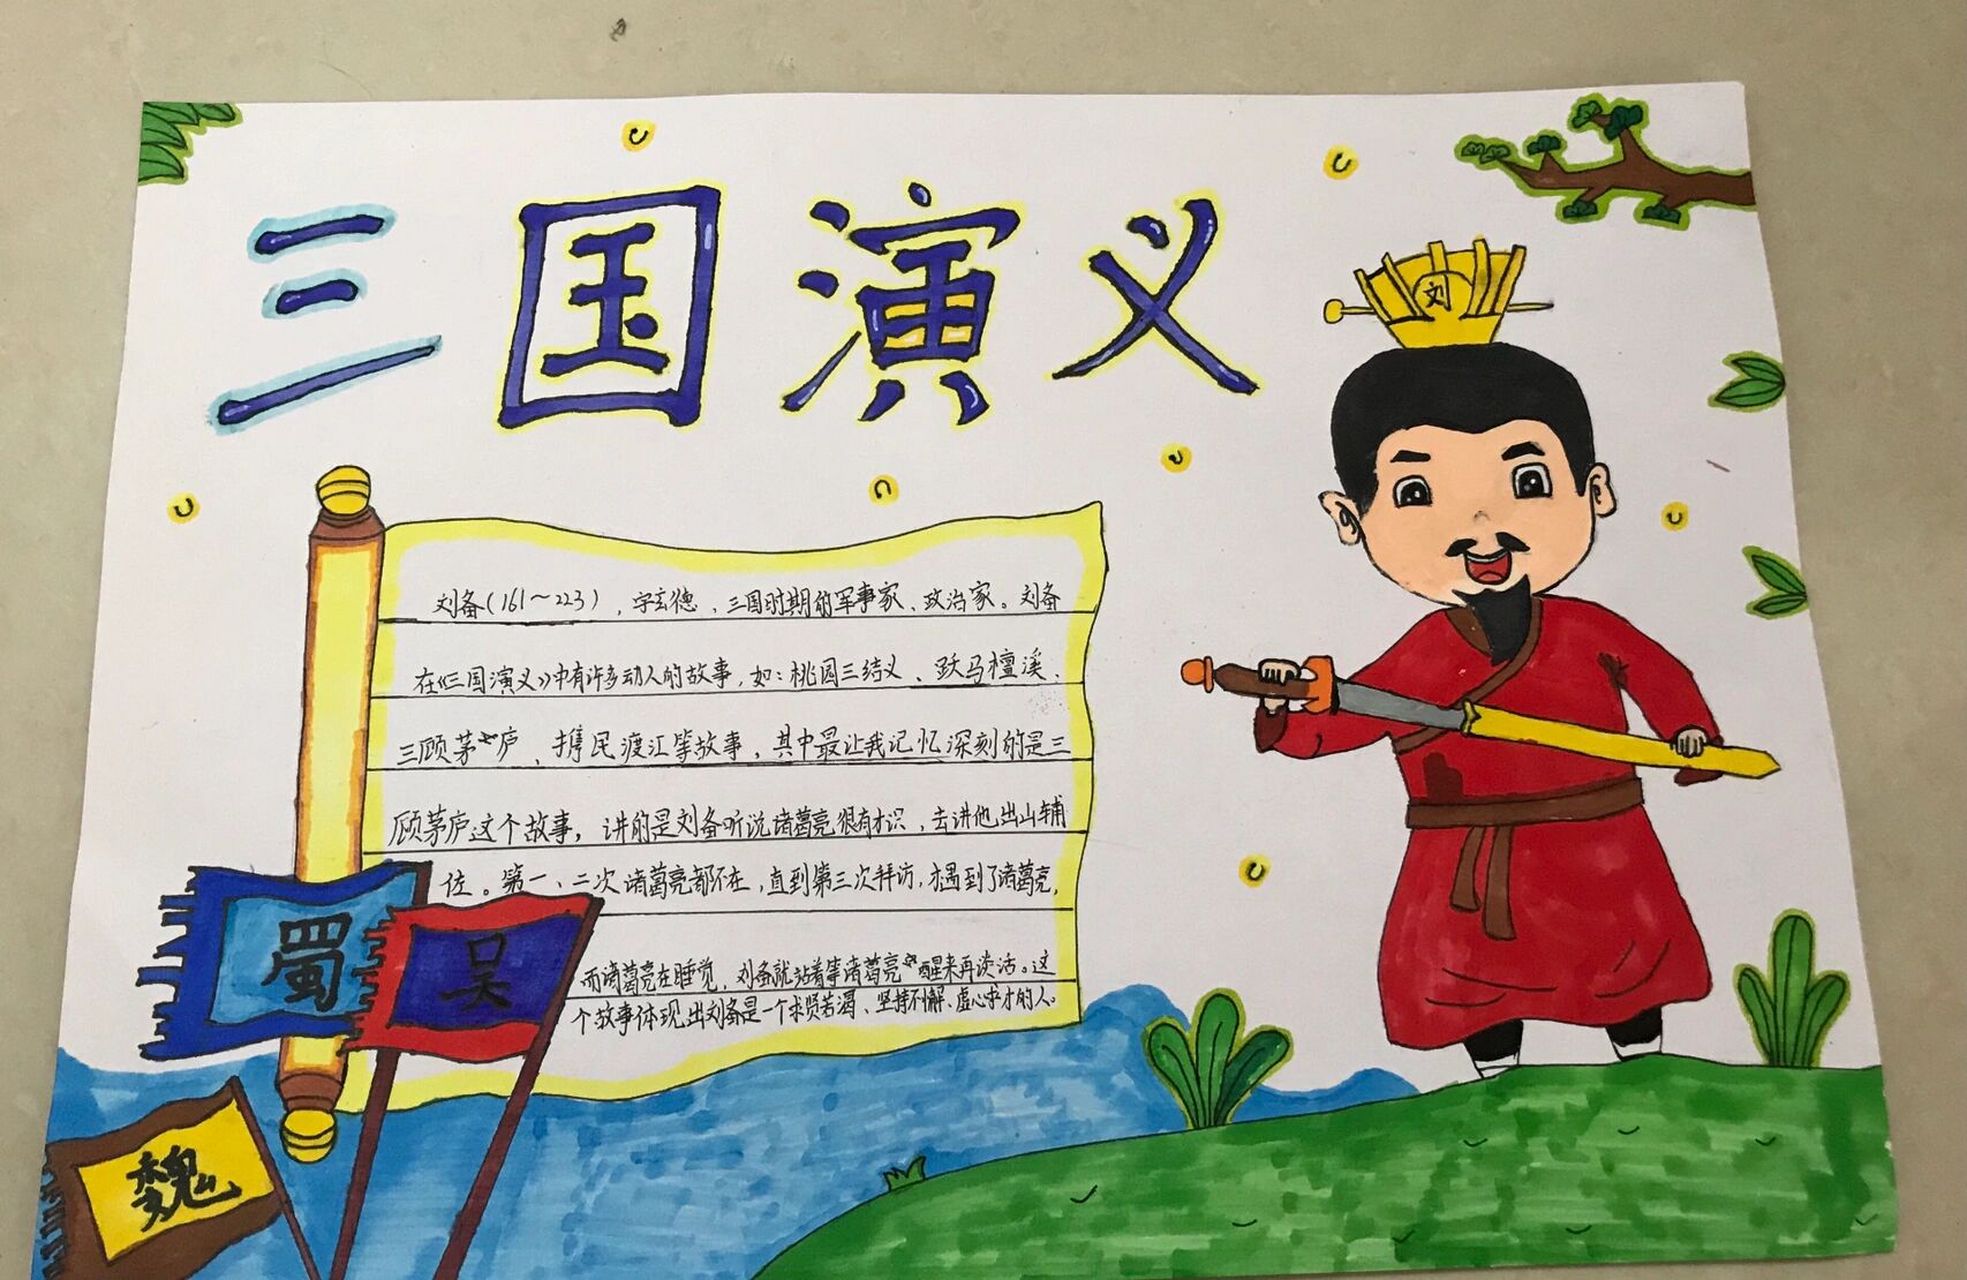 三国演义——刘备 外甥的手抄报作品 老师说,读一篇课文,把喜欢的人物